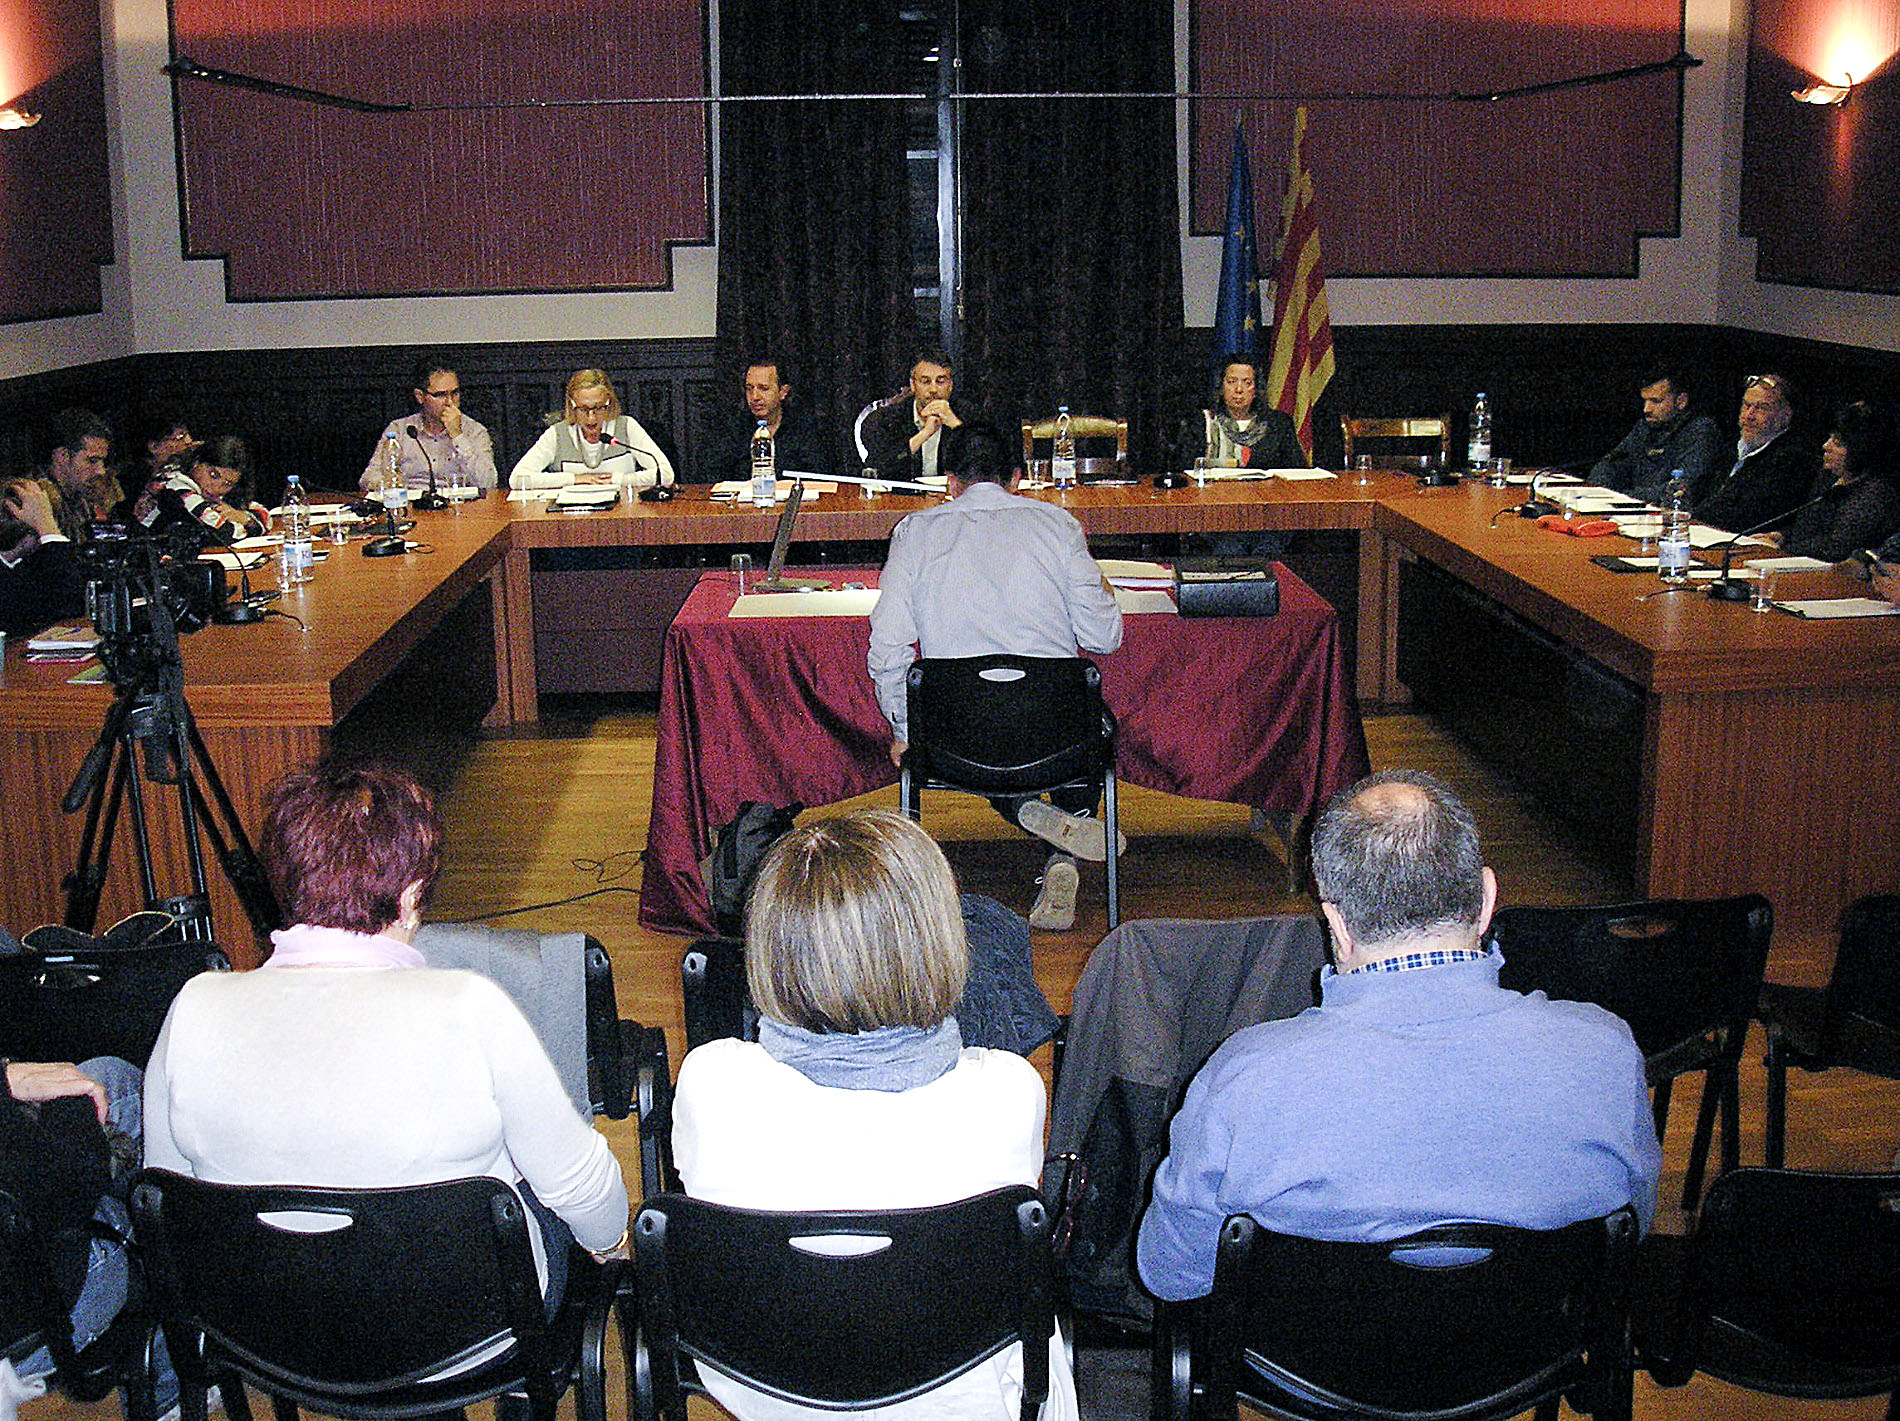 El ple de les ordenances de l'Ajuntament de Ripoll es va fer dimarts al vespre